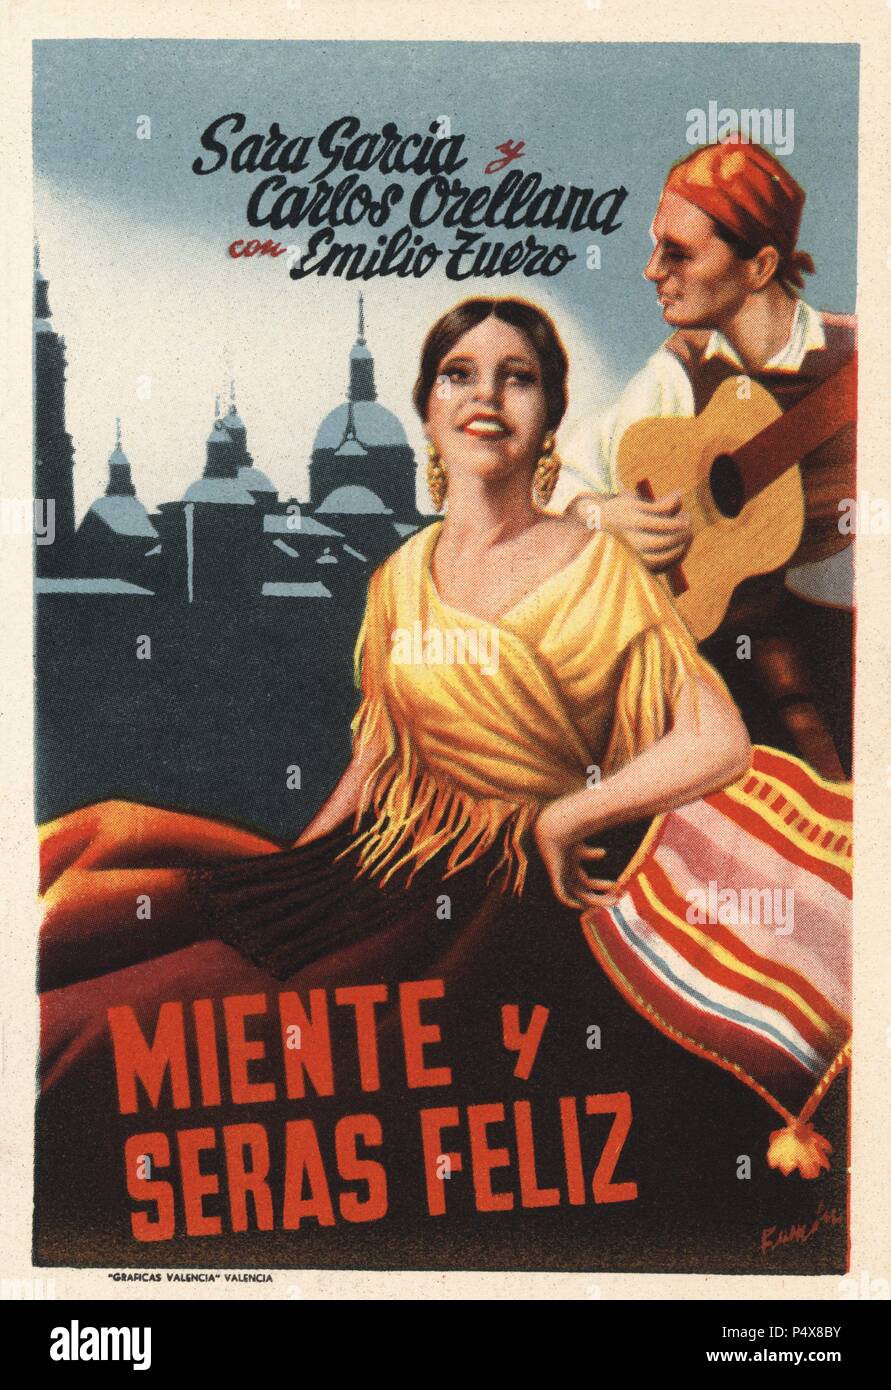 Cartel de la película Miente y Serás Feliz, con Sara García y Carlos Orellana. Méjico, 1939. Stock Photo